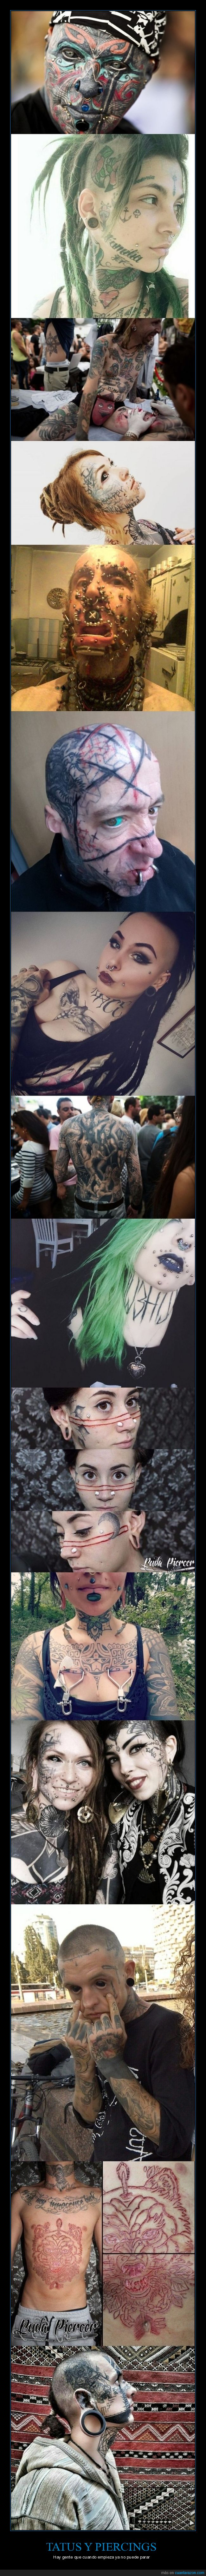 tatuajes,piercings